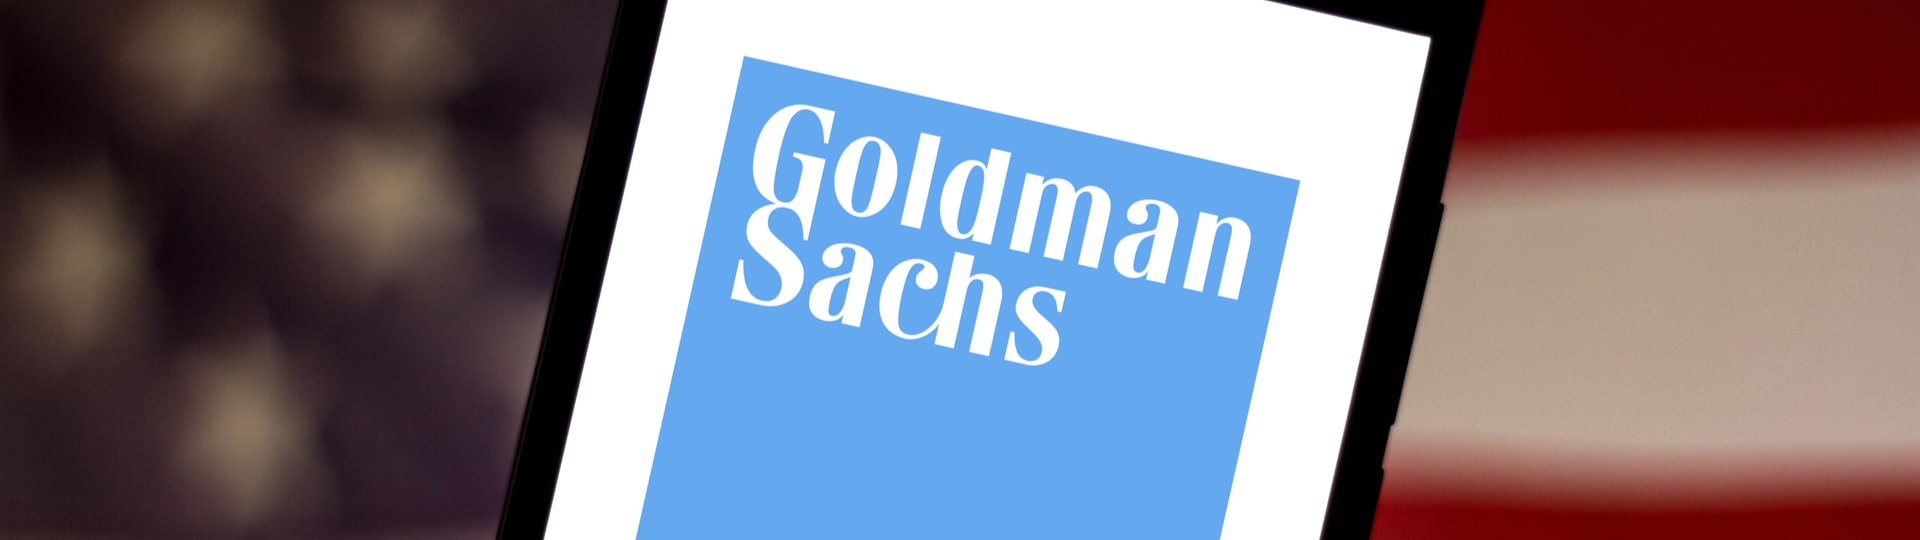 Americká banka Goldman Sachs loni zvýšila zisk i výnosy na rekord